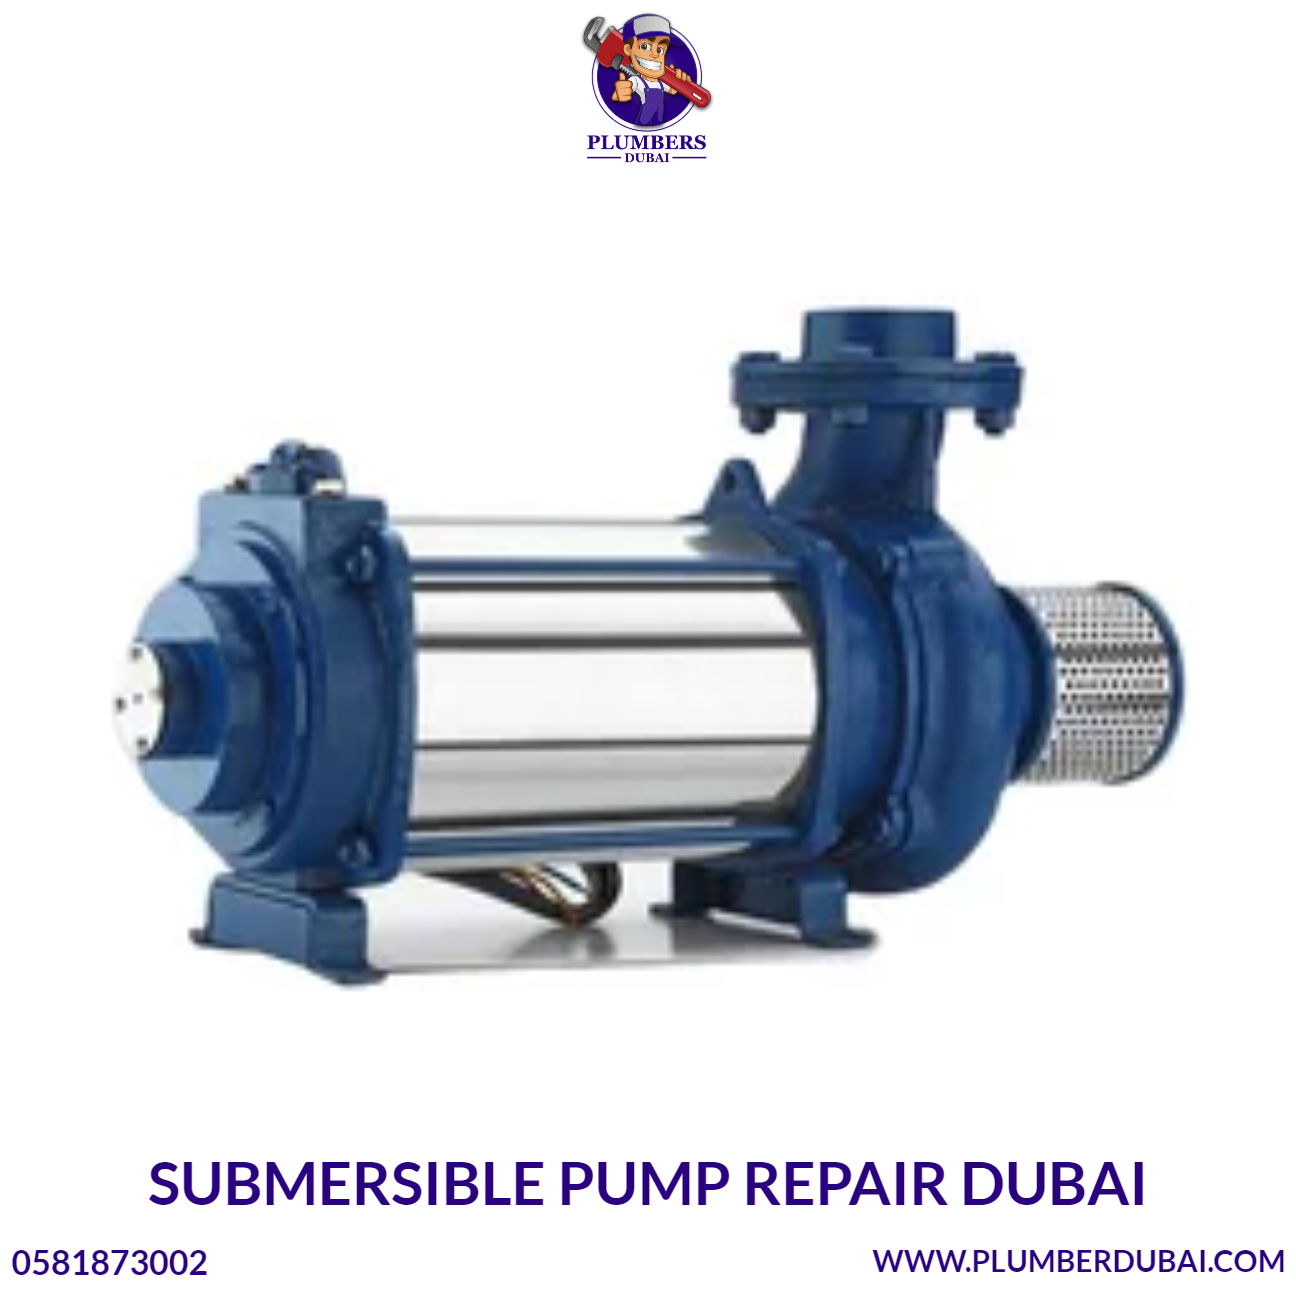 Submersible Pump Repair Dubai